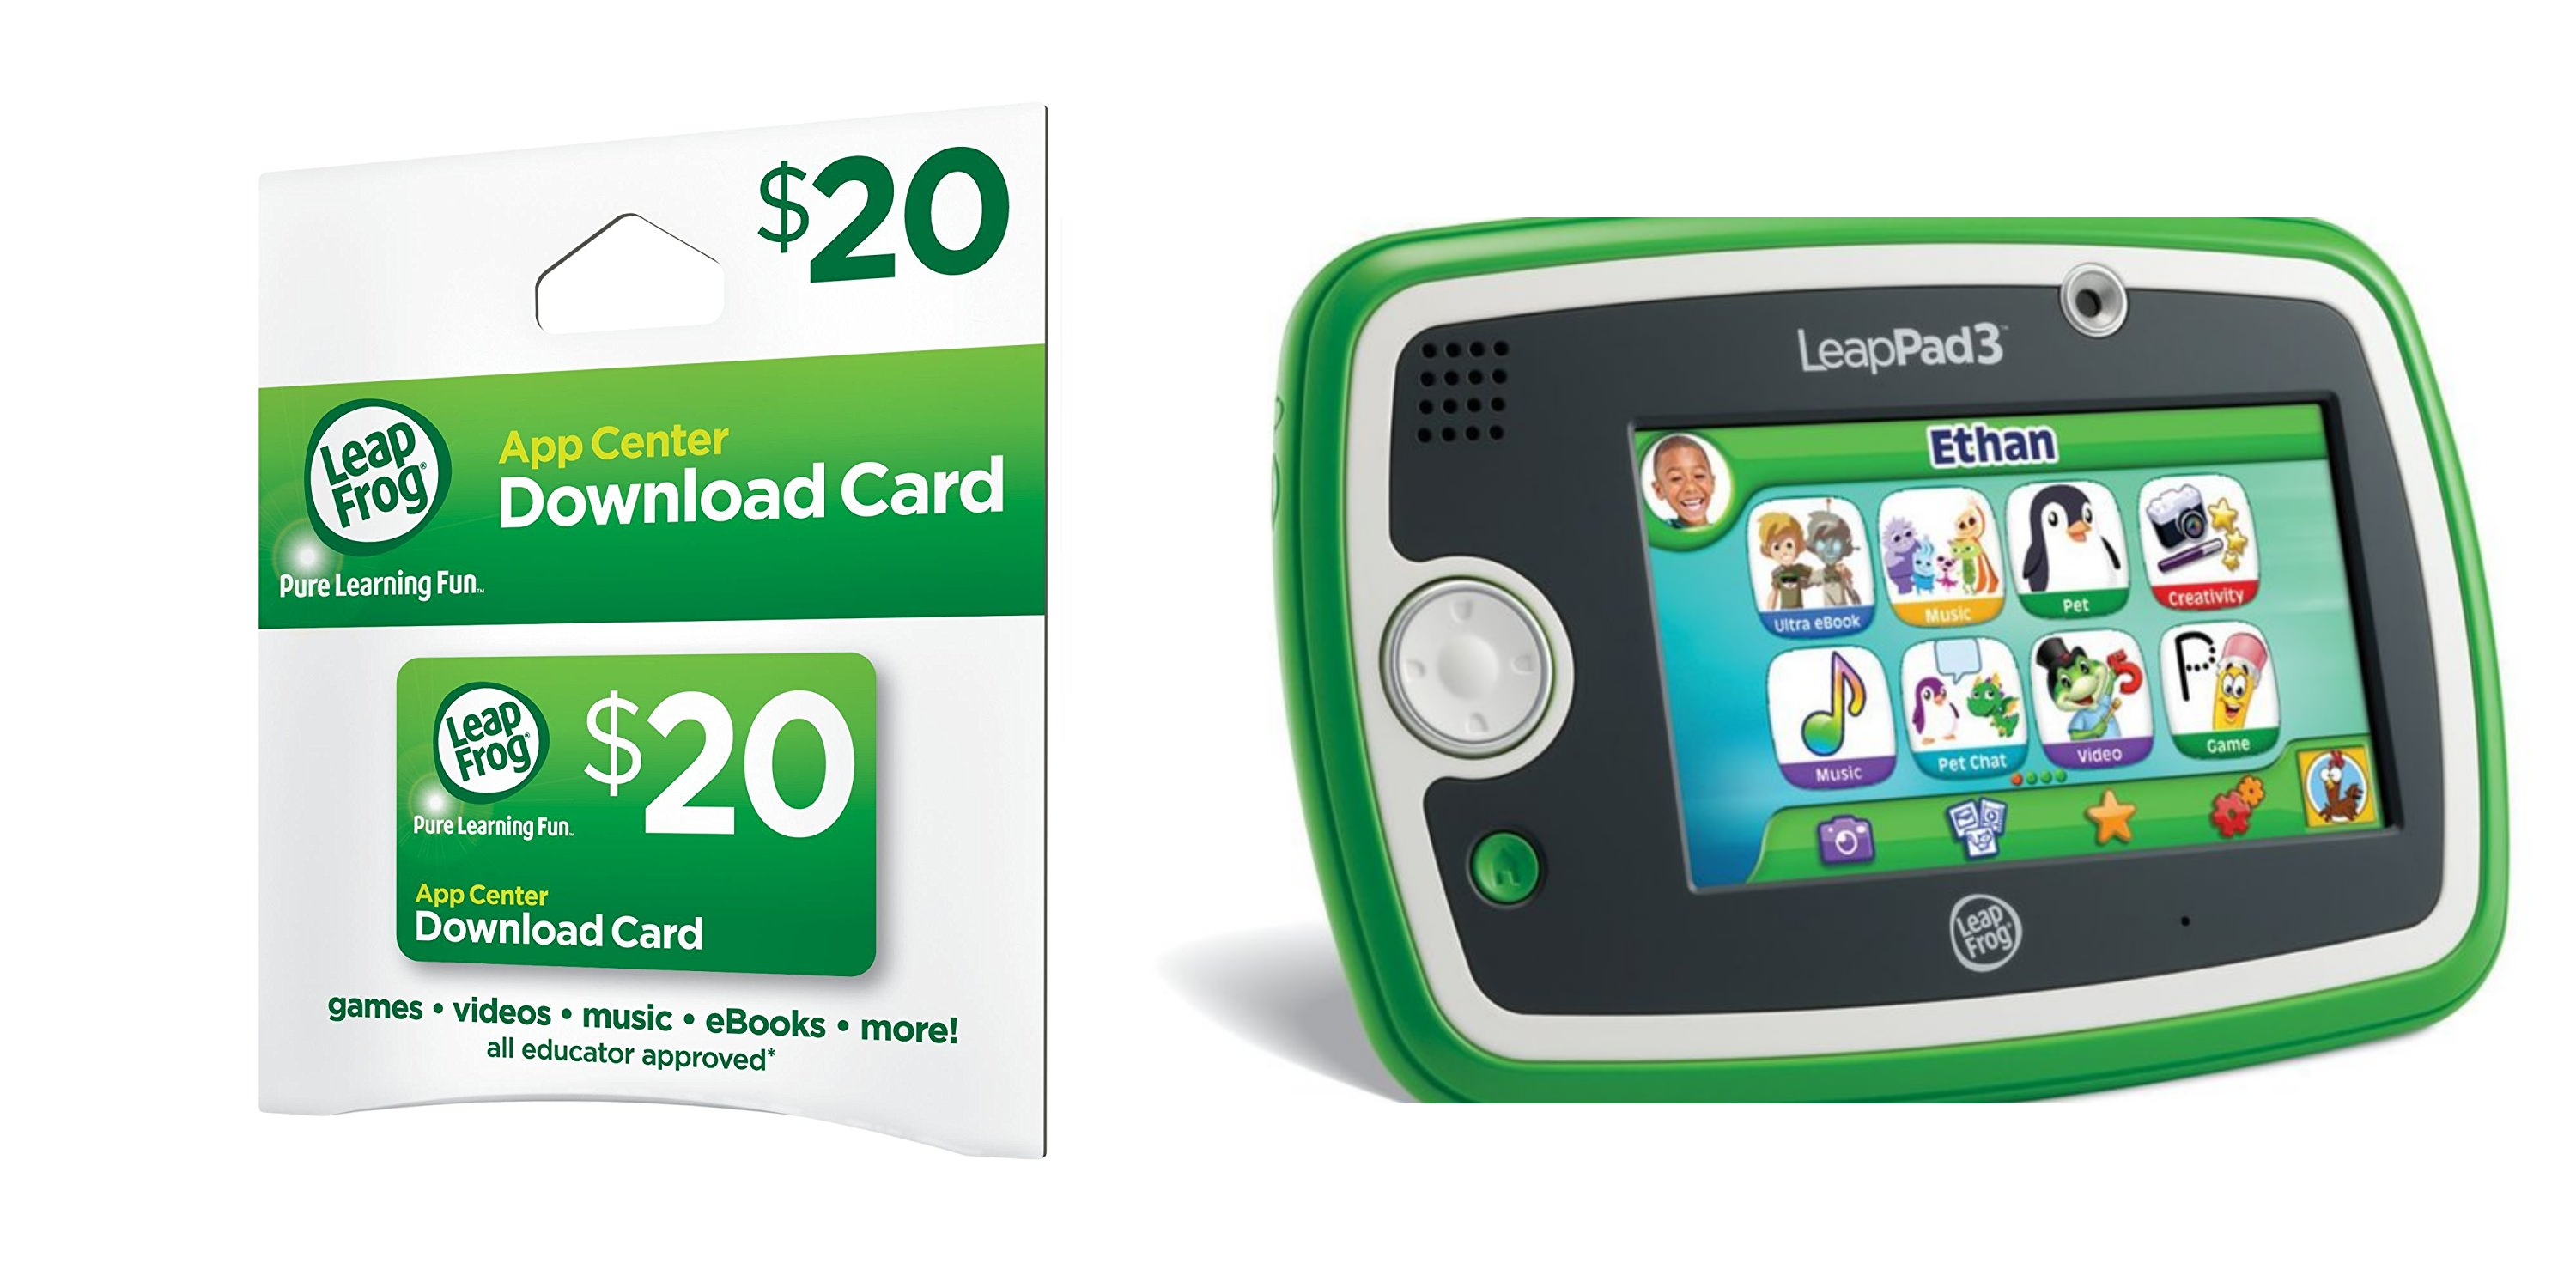 LeapFrog App Center $20 Digital Download Card for only $11.99!